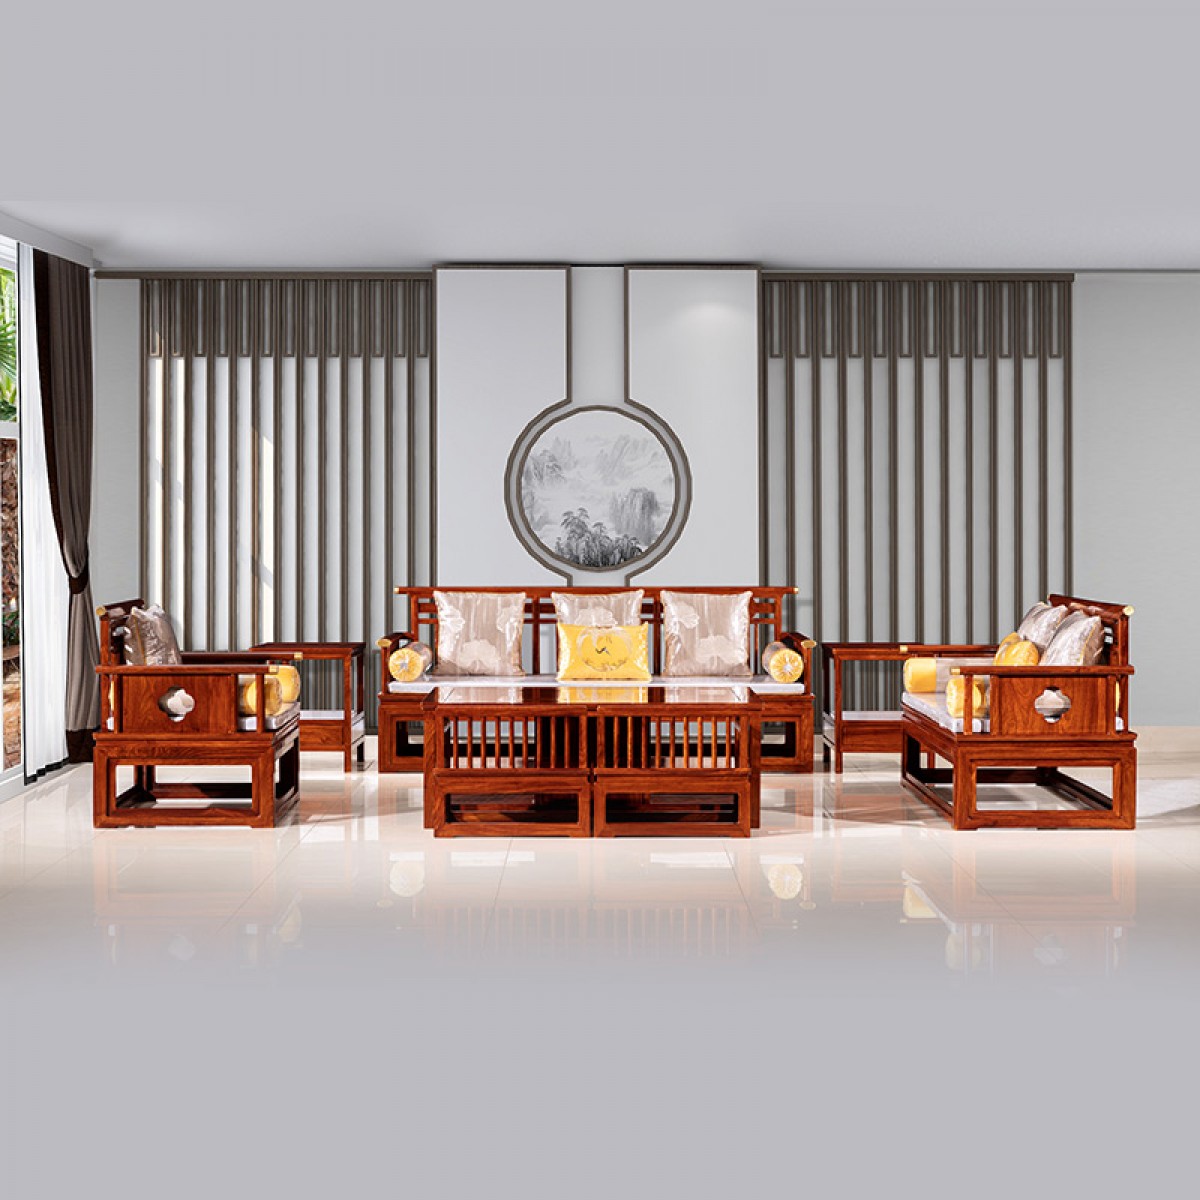 新中式刺猬紫檀沙发红木家具全实木组合客厅成套非洲花梨禅意小户型茶几祥瑞沙发